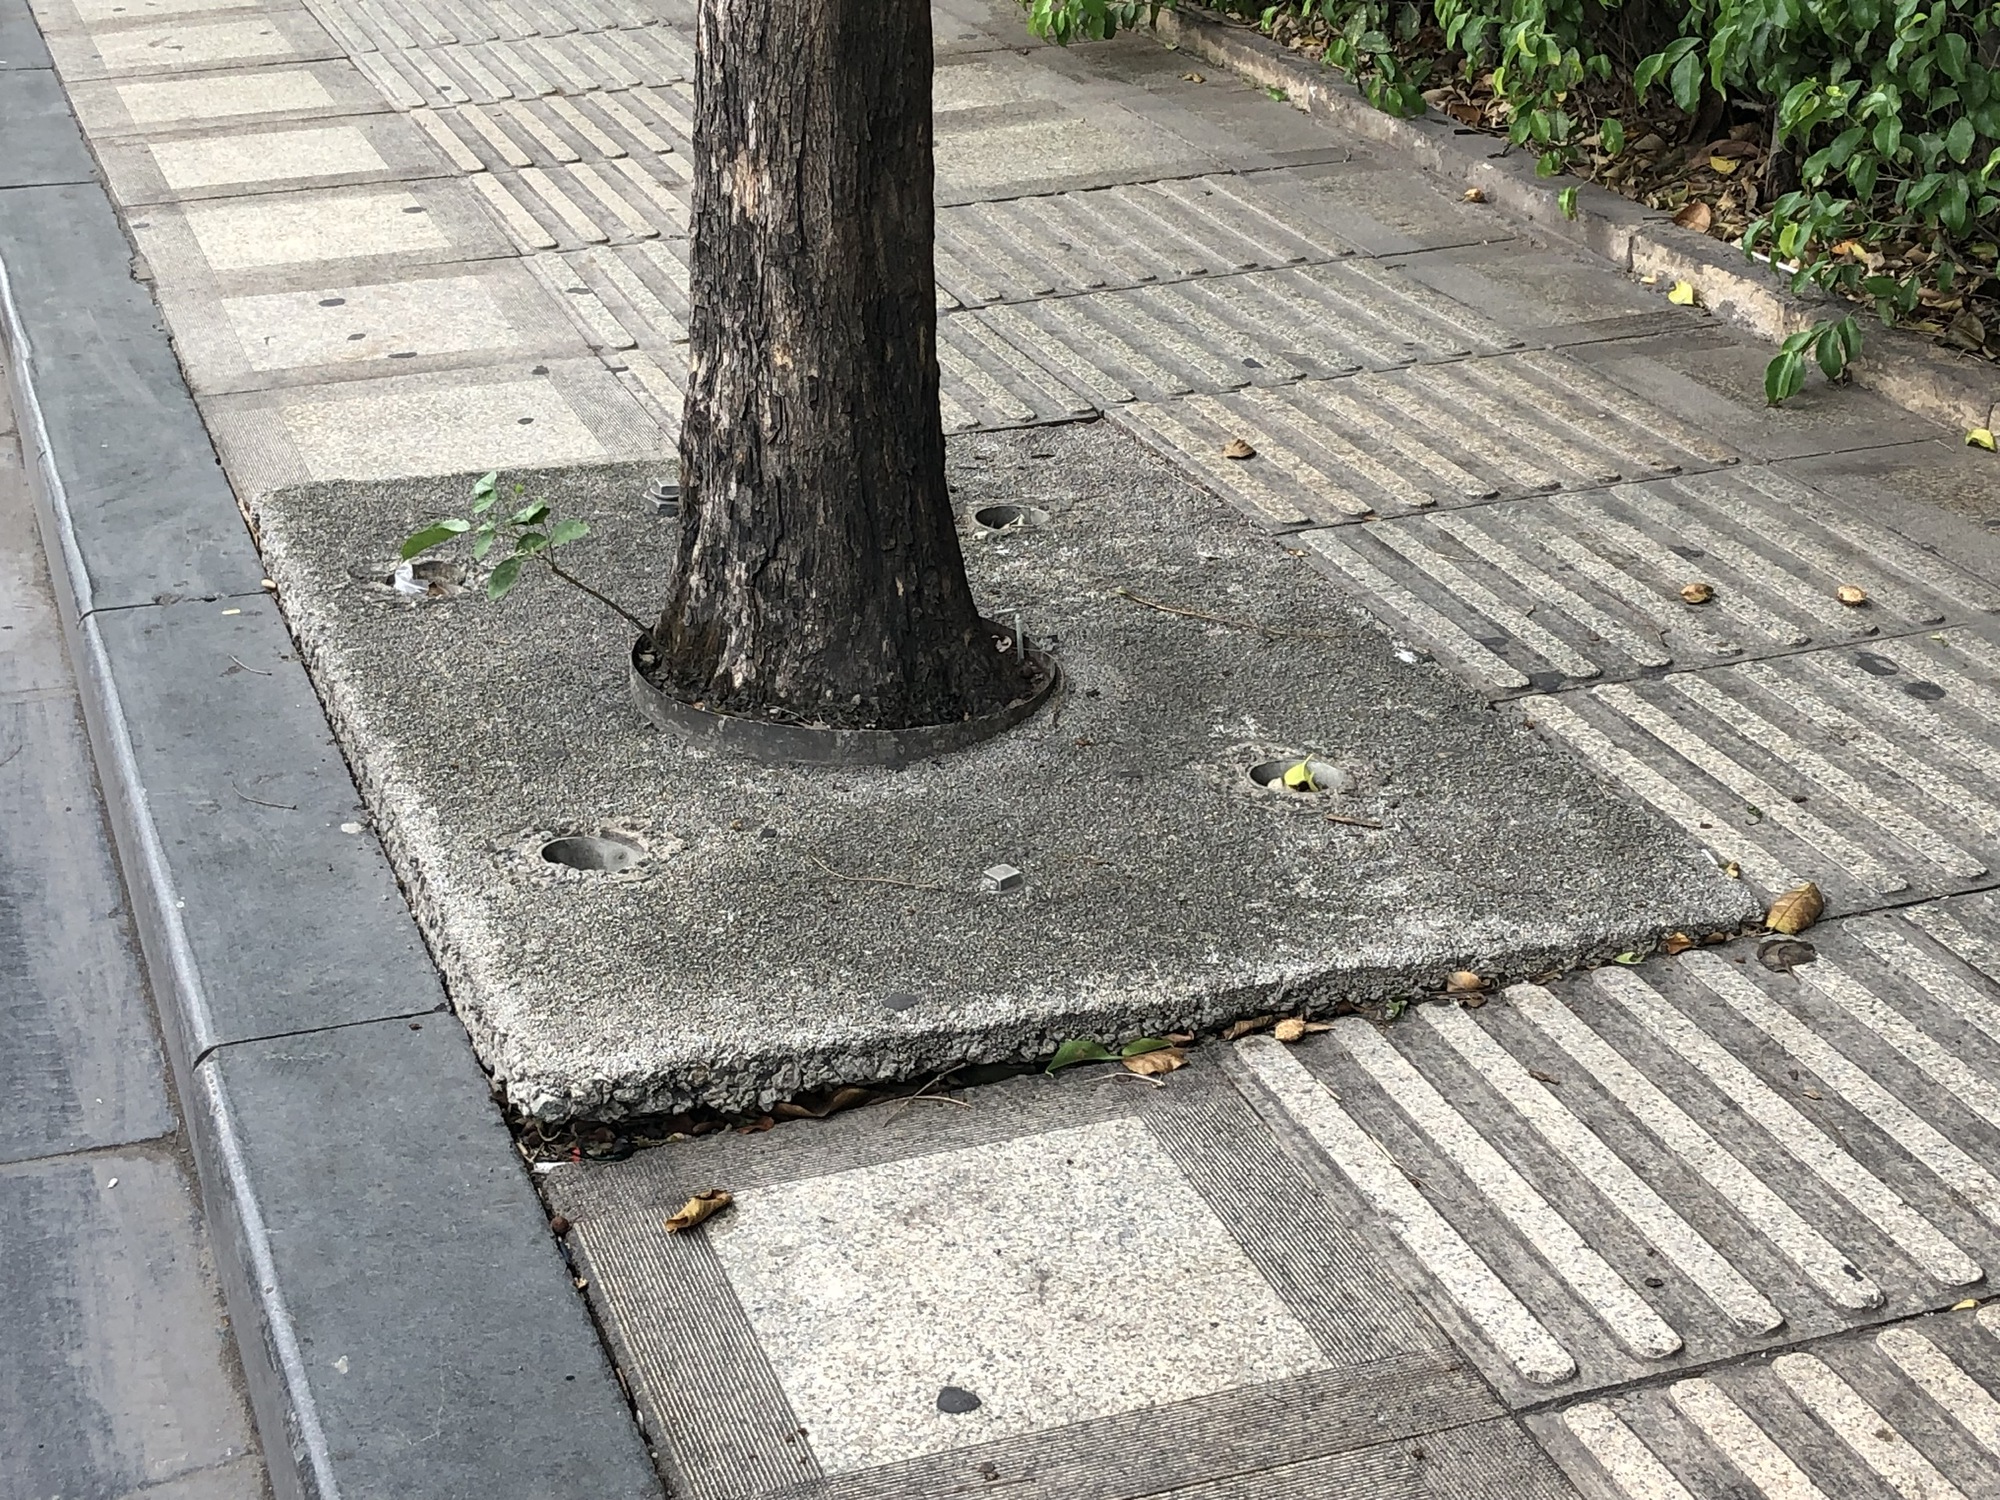 Hàng cây trên đường vào sân bay Tân Sơn Nhất bị bít đường lớn - Ảnh 2.